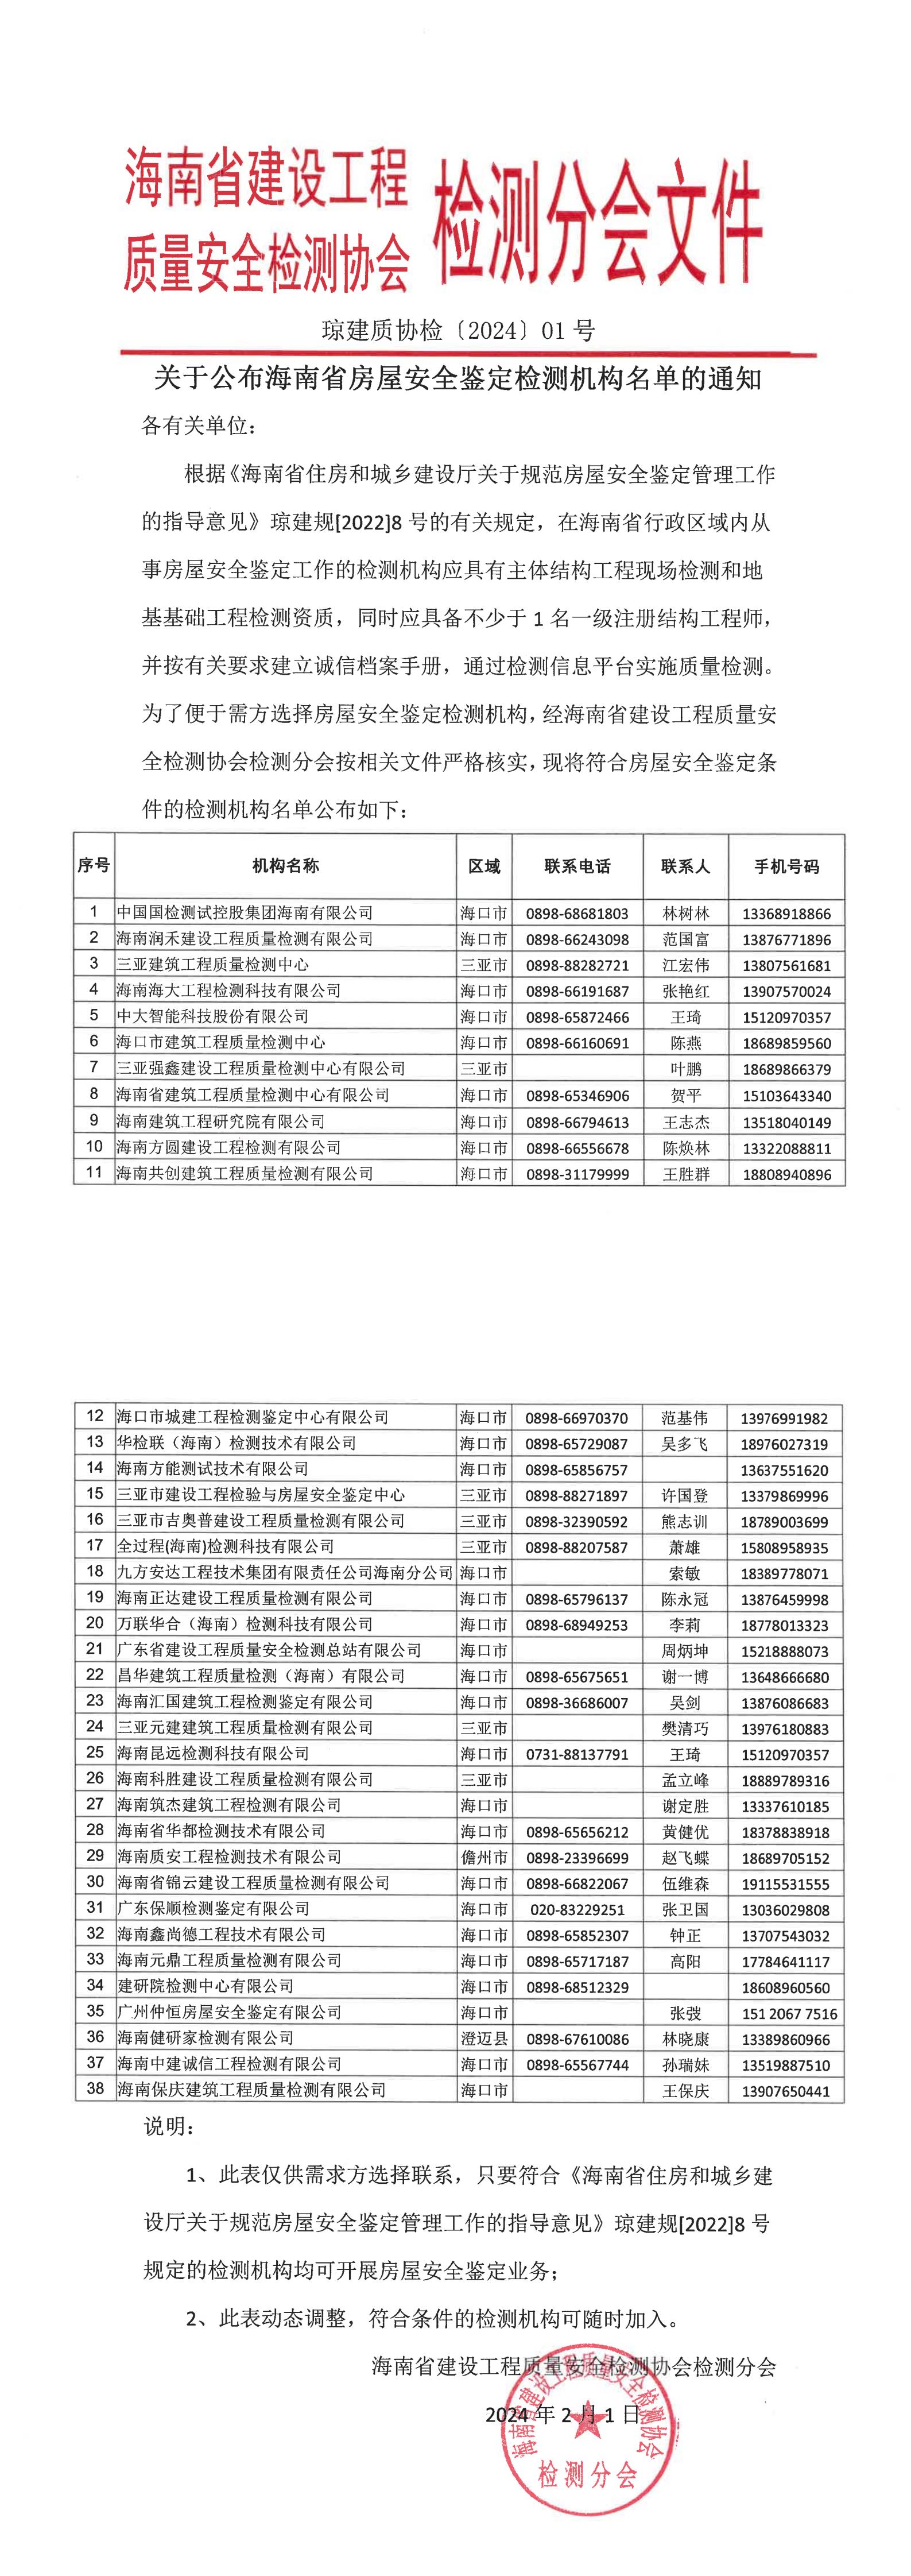 关于公布海南省房屋安全鉴定检测机构名单的通知_00.jpg